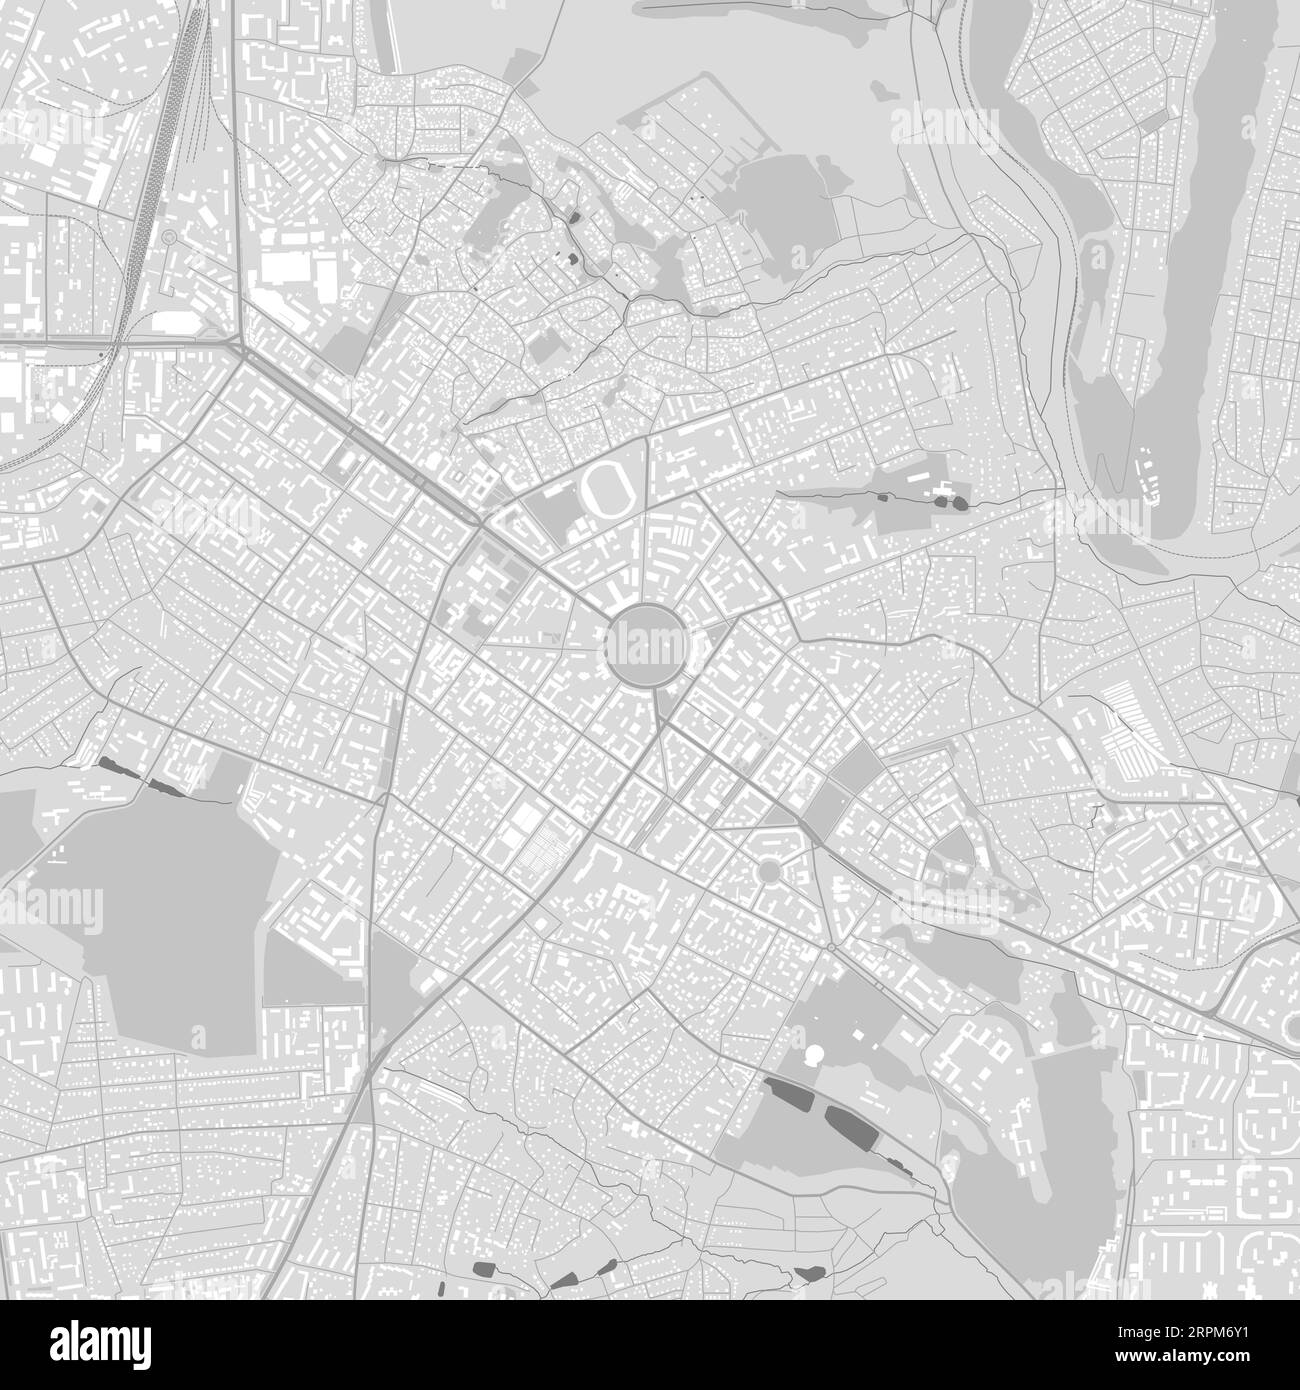 Carte de Poltava ville, Ukraine. Affiche urbaine en noir et blanc. Image de la carte routière avec vue de la zone urbaine. Illustration de Vecteur